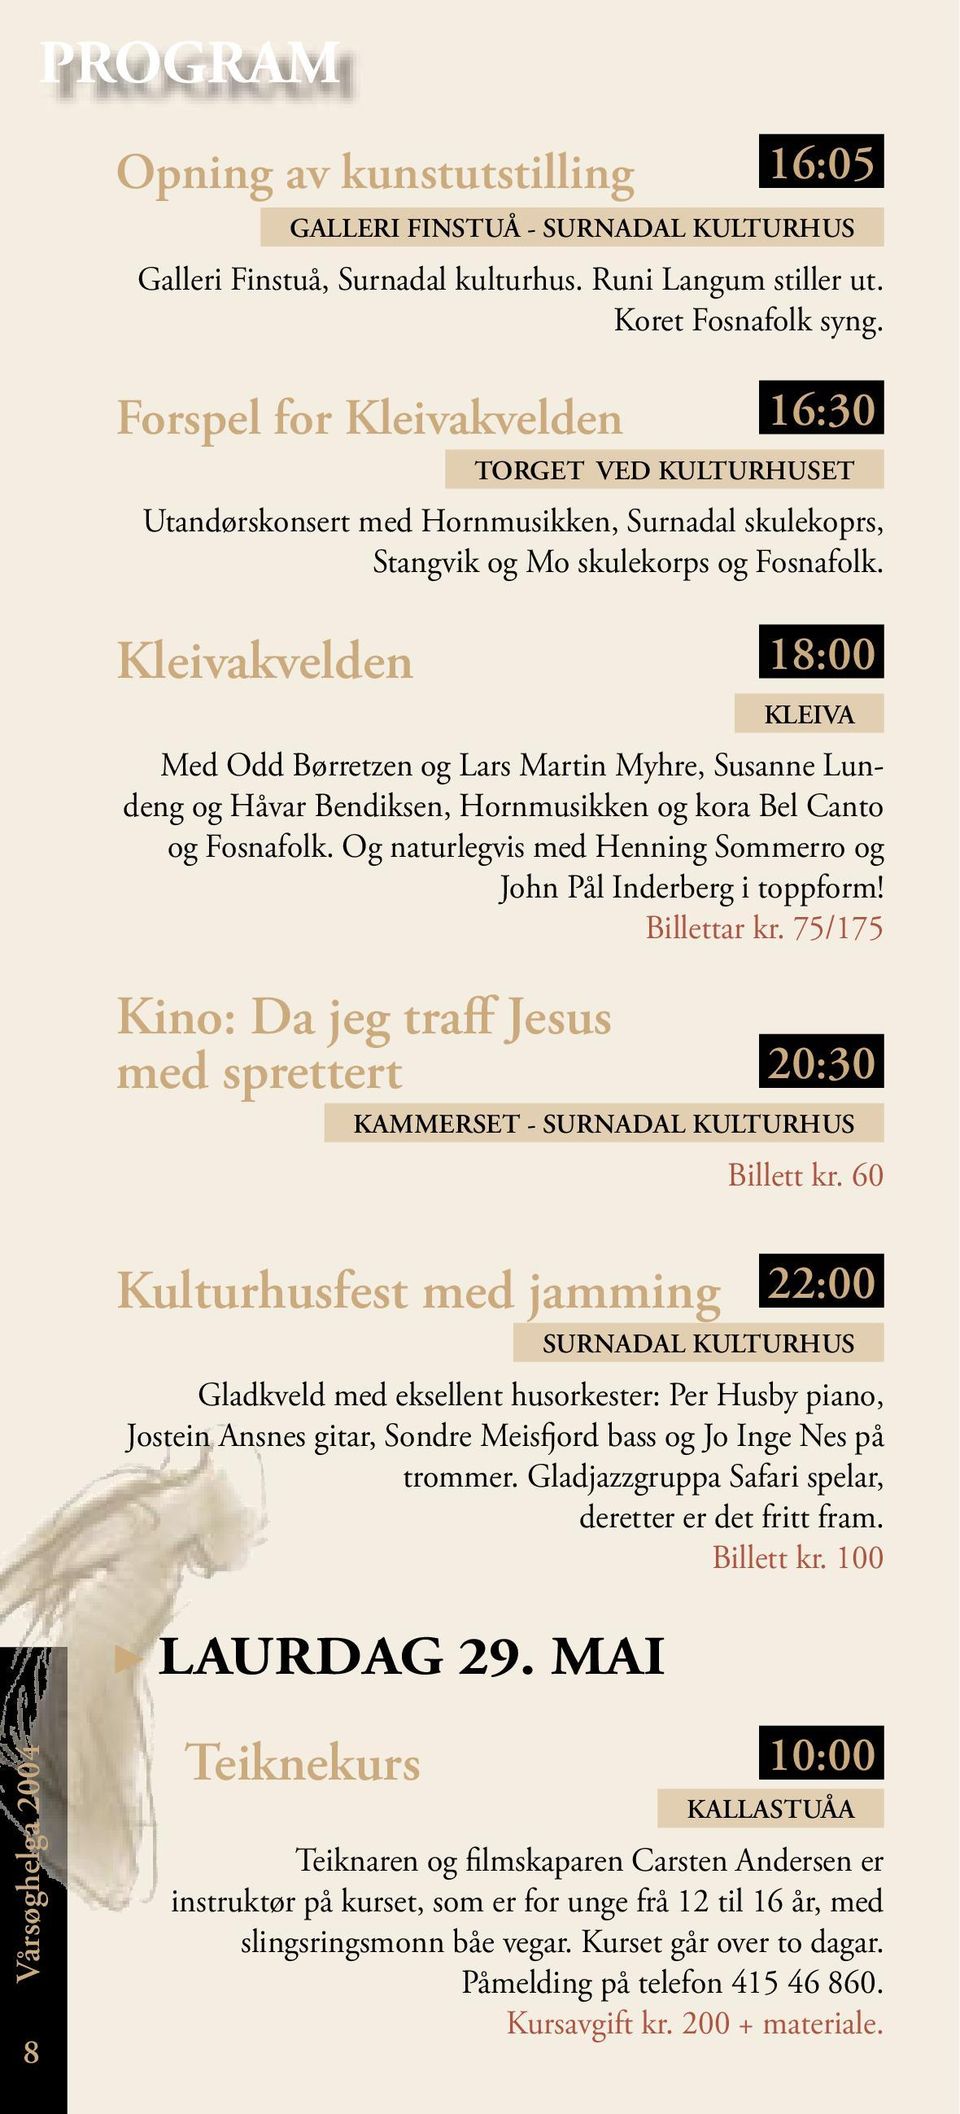 Kleivakvelden 18:00 KLEIVA Med Odd Børretzen og Lars Martin Myhre, Susanne Lundeng og Håvar Bendiksen, Hornmusikken og kora Bel Canto og Fosnafolk.